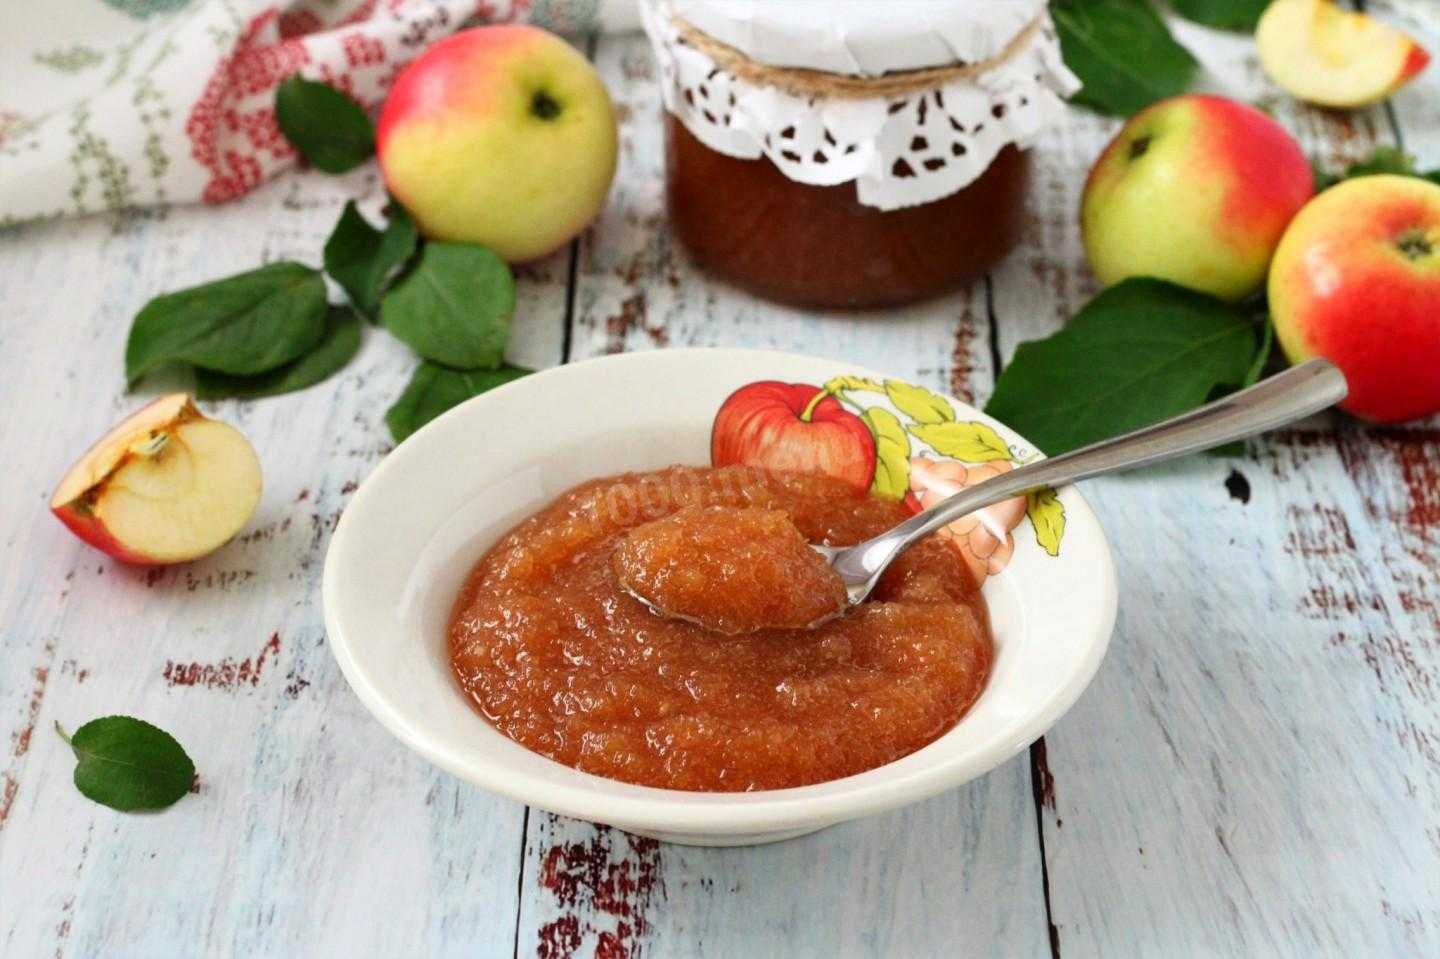 Повидло из яблок в мультиварке по простым рецептам на зиму со сливами или грушами